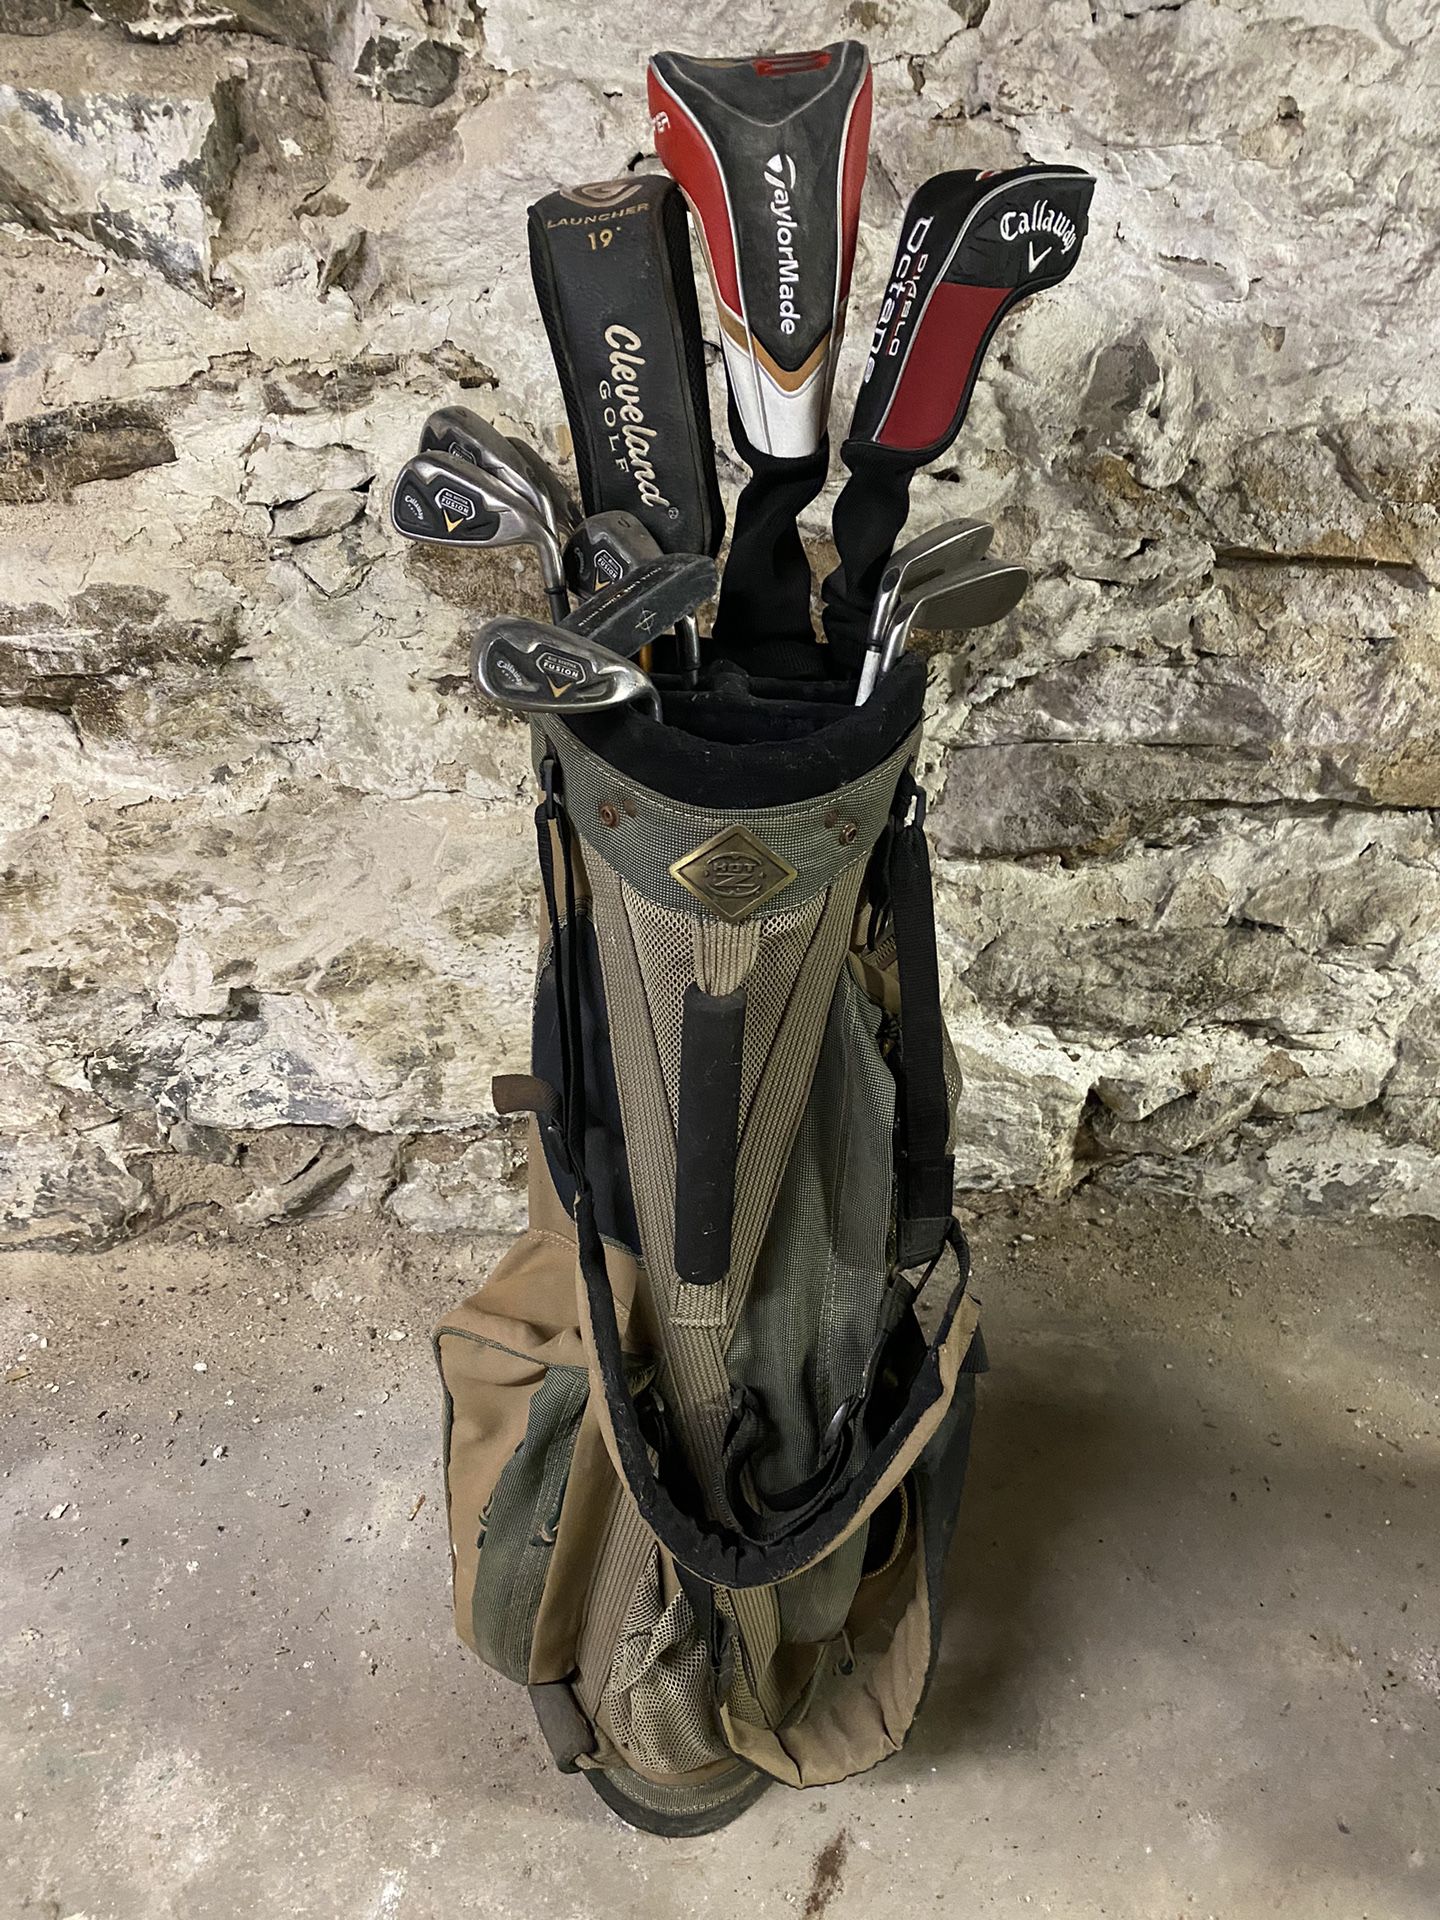 Golf Clubs Set! Top Flight➕ Golf Irons, Drivers, Putter & Bag